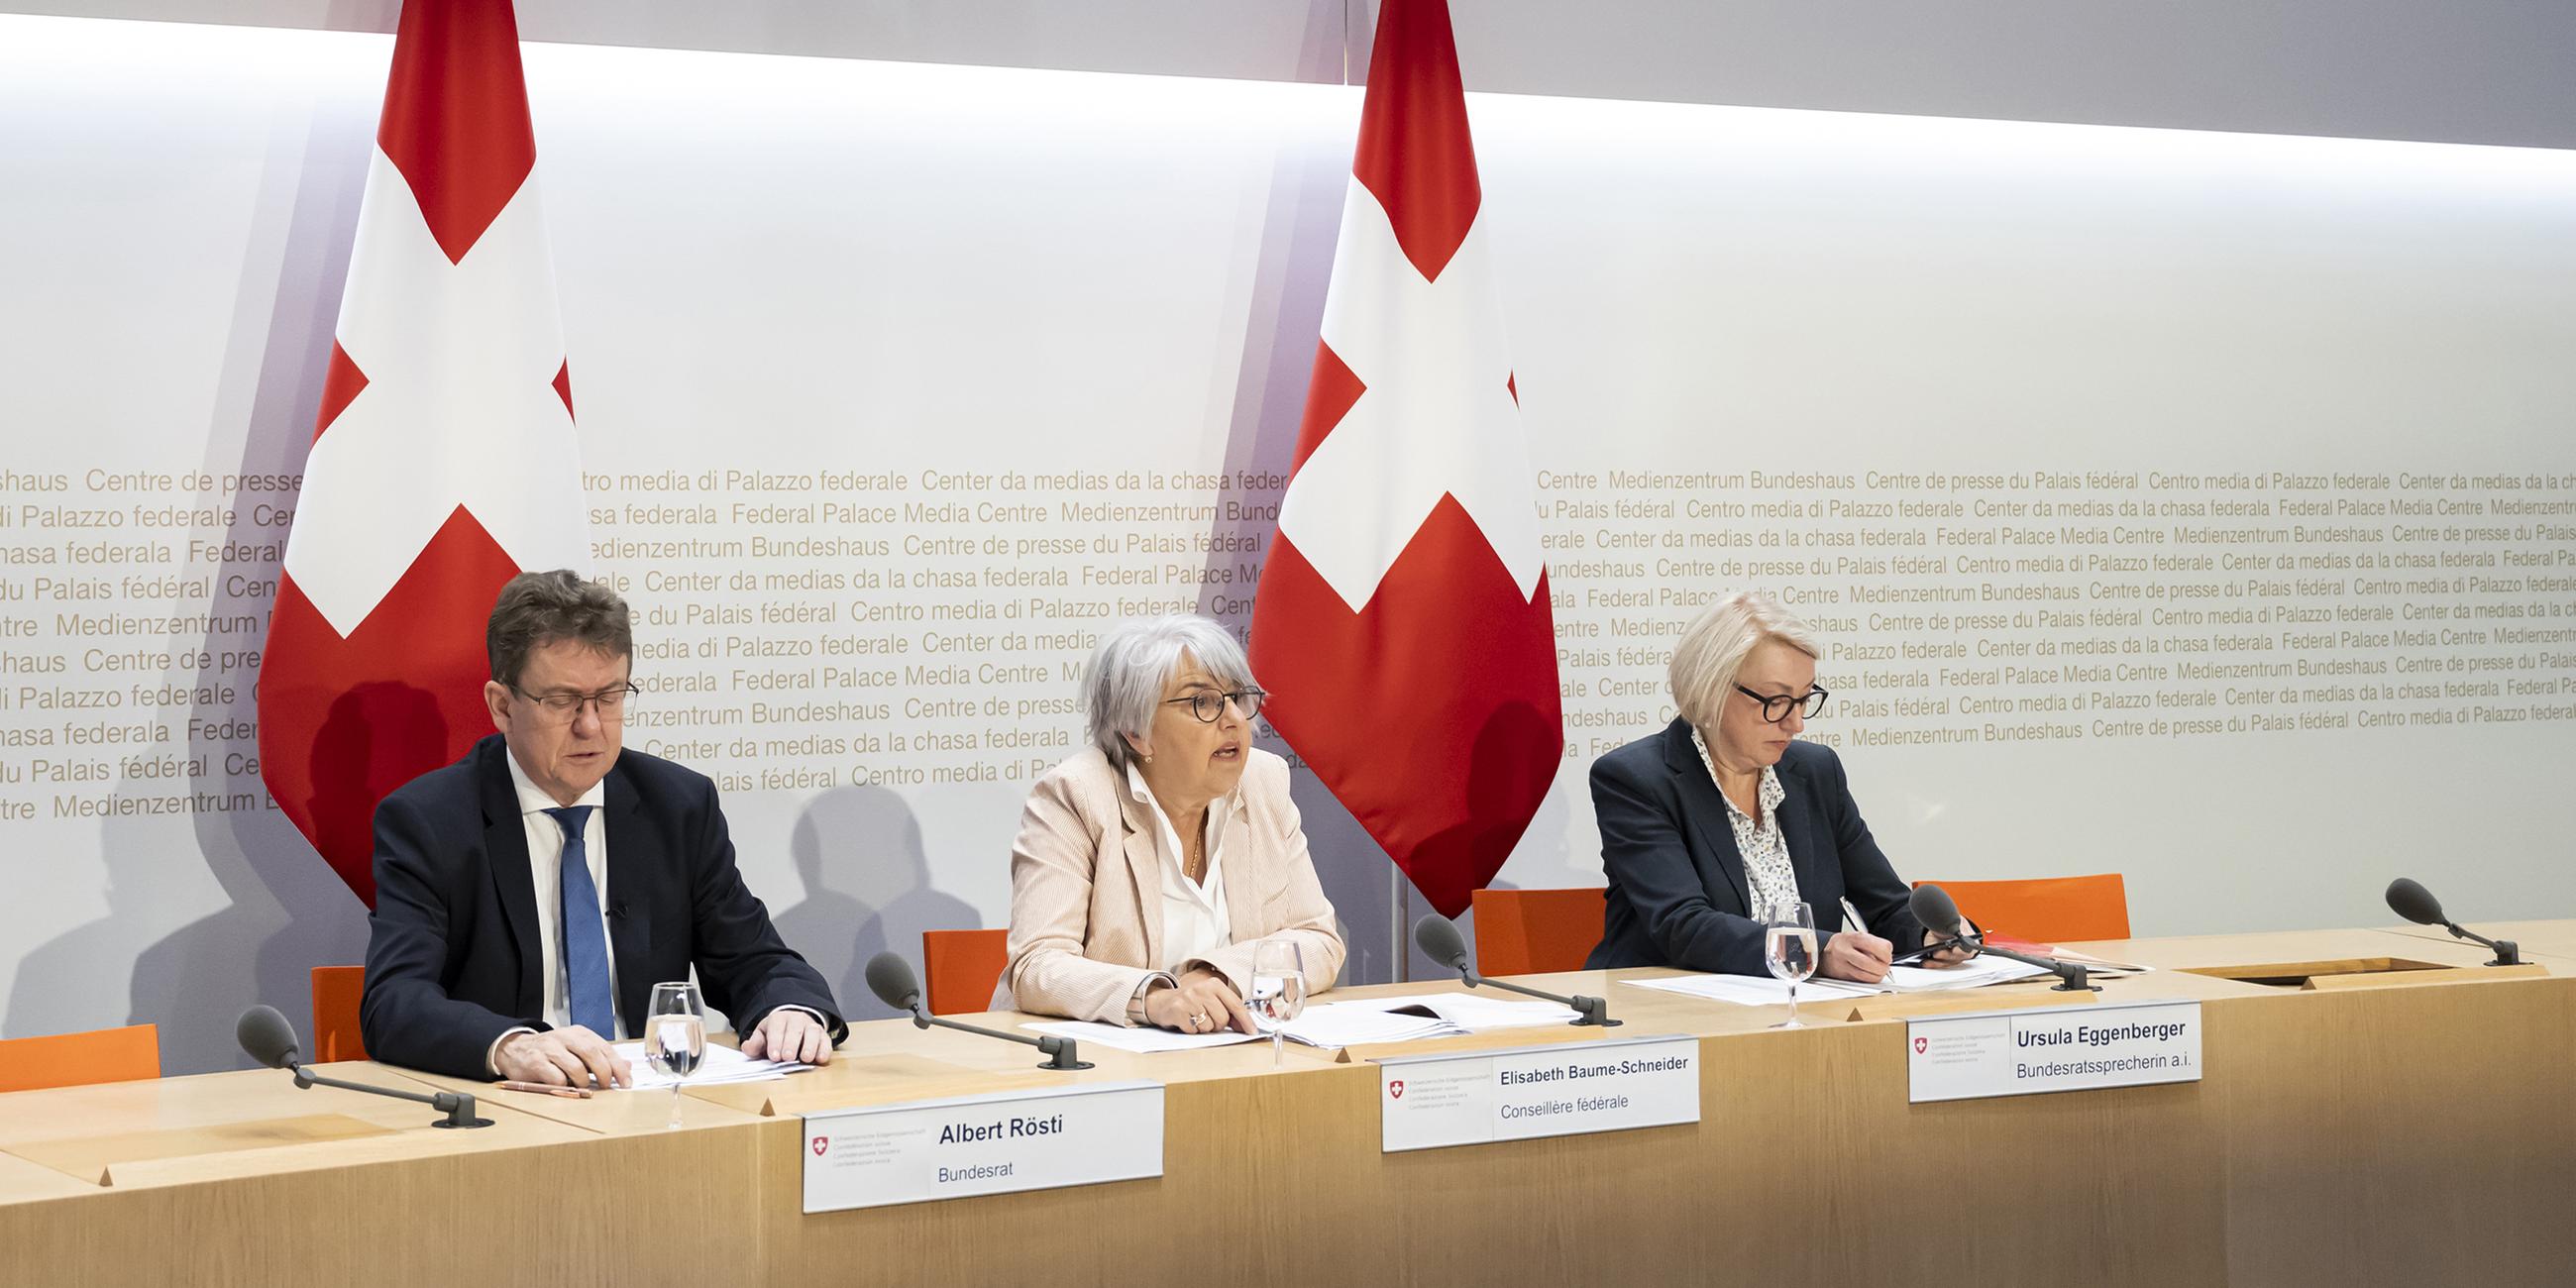 Bundesrätin Elisabeth Baume-Schneider spricht neben Bundesrat Albert Rösti und Ursula Eggenberger, Vizekanzlerin und vorläufige Bundesratssprecherin, während einer Medienkonferenz zu den Abstimmungsergebnissen